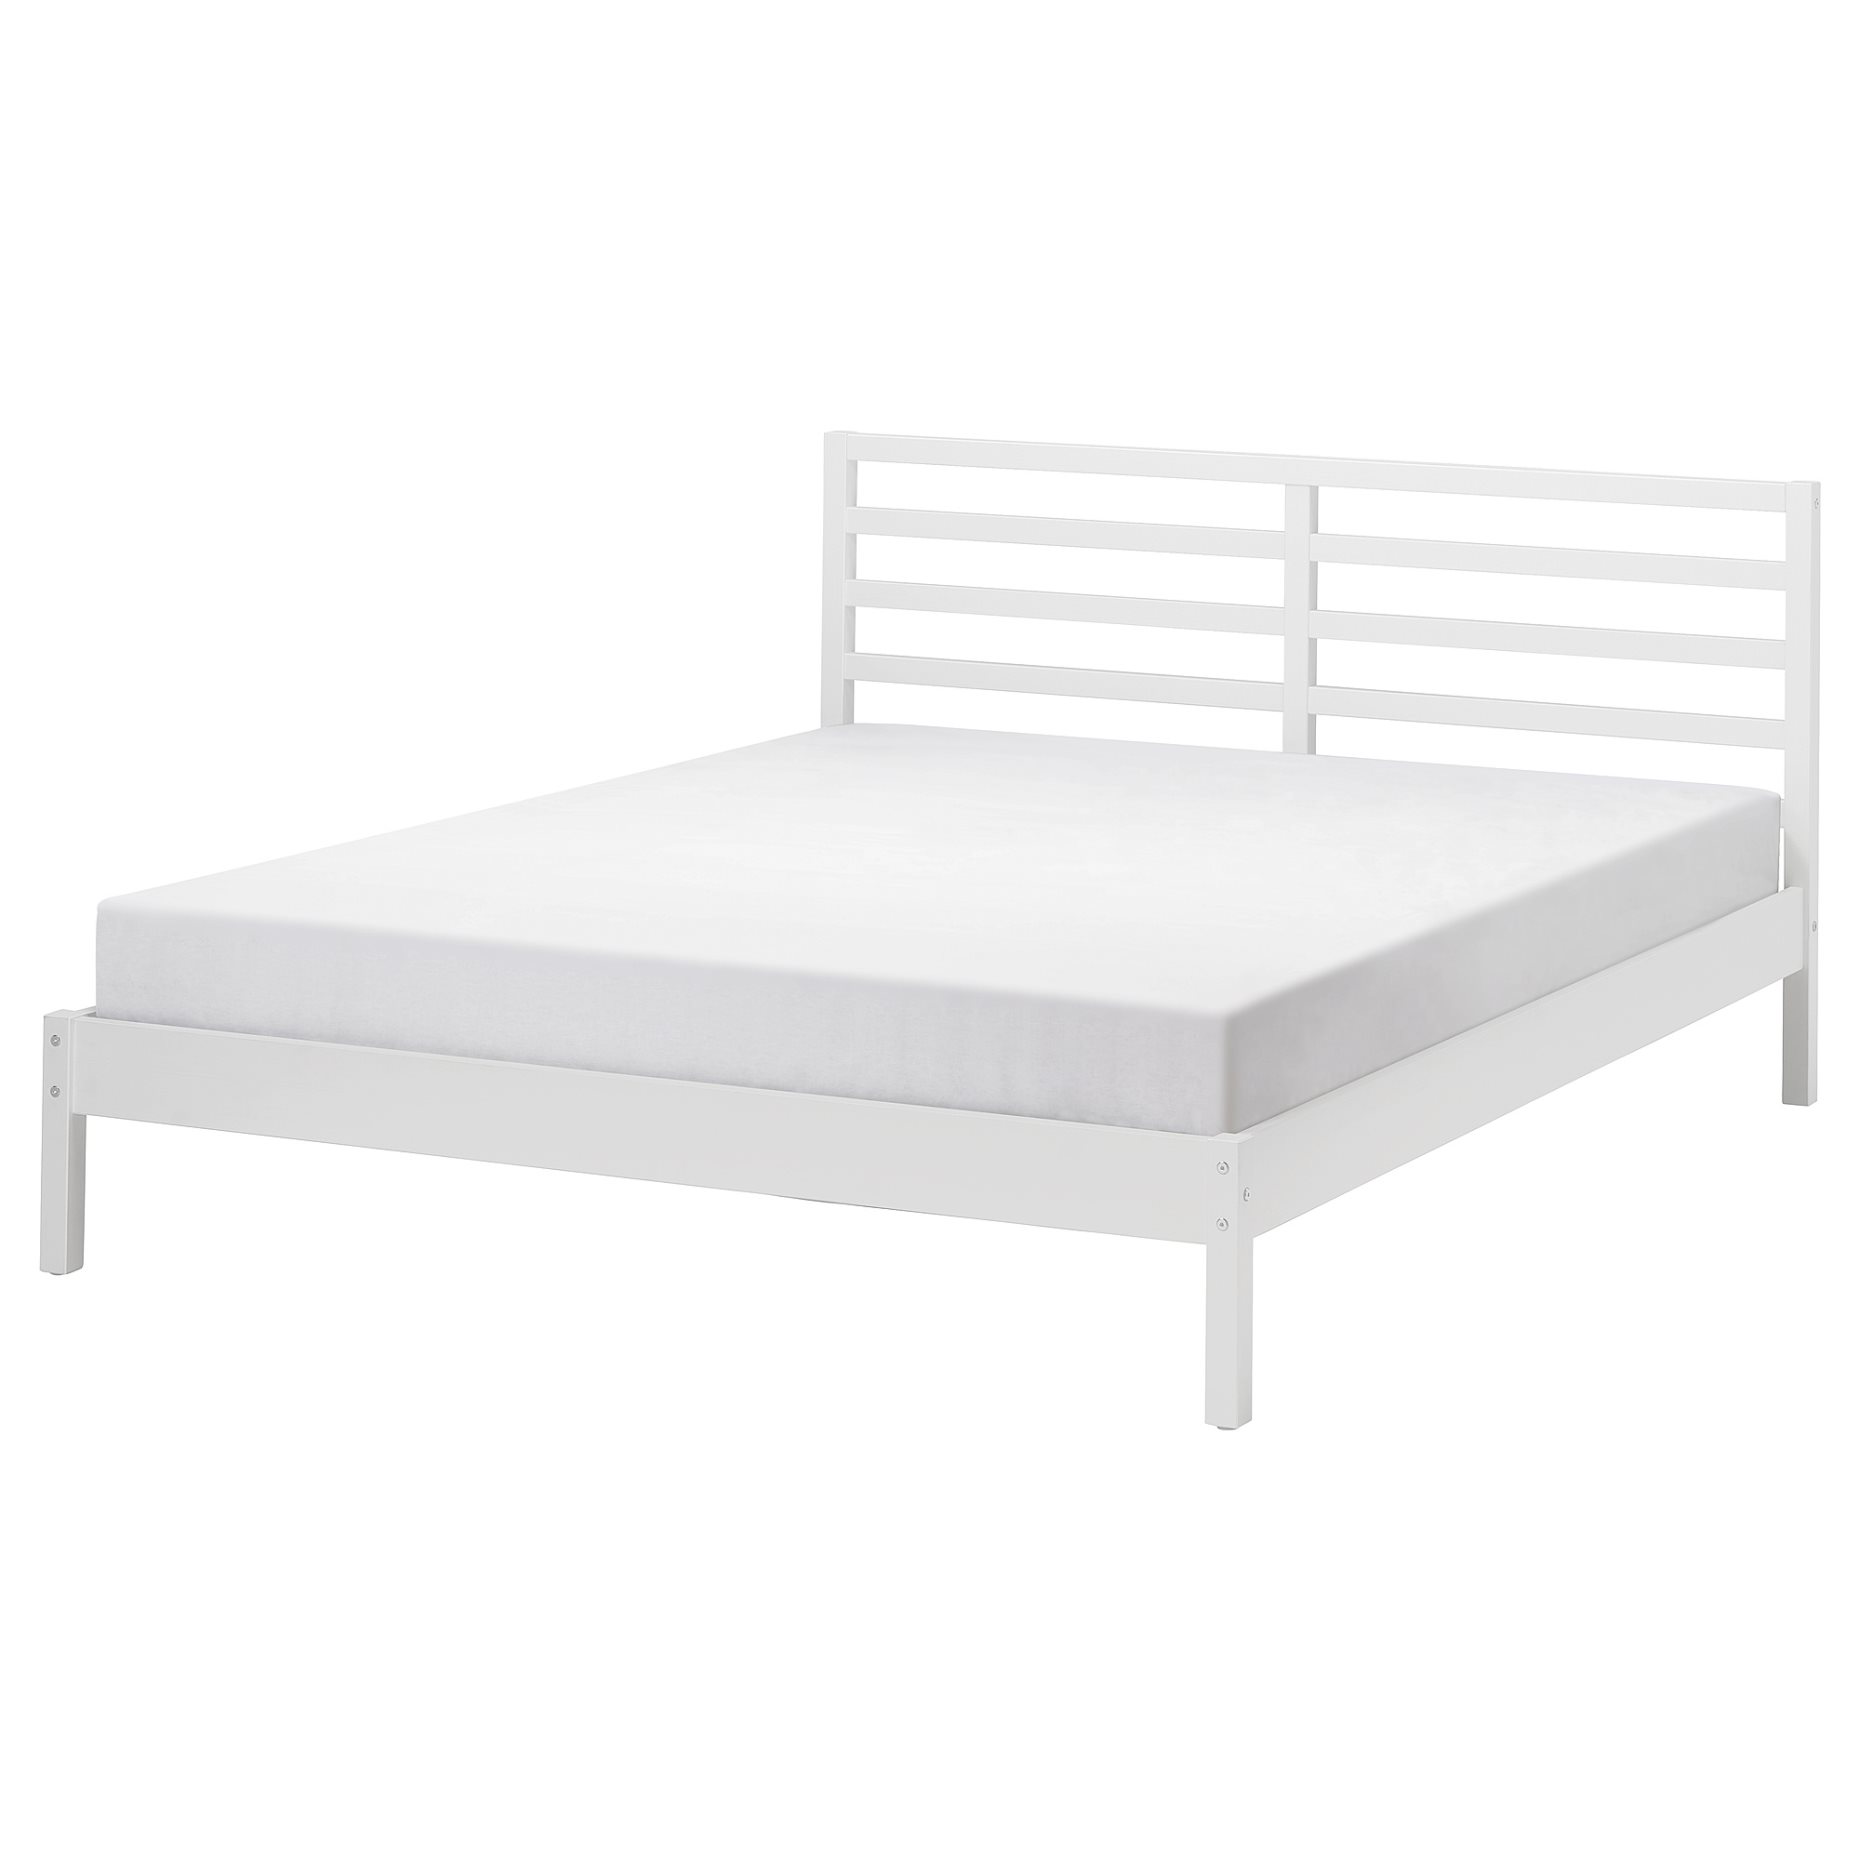 TARVA, bed frame, 140x200 cm, 595.539.37